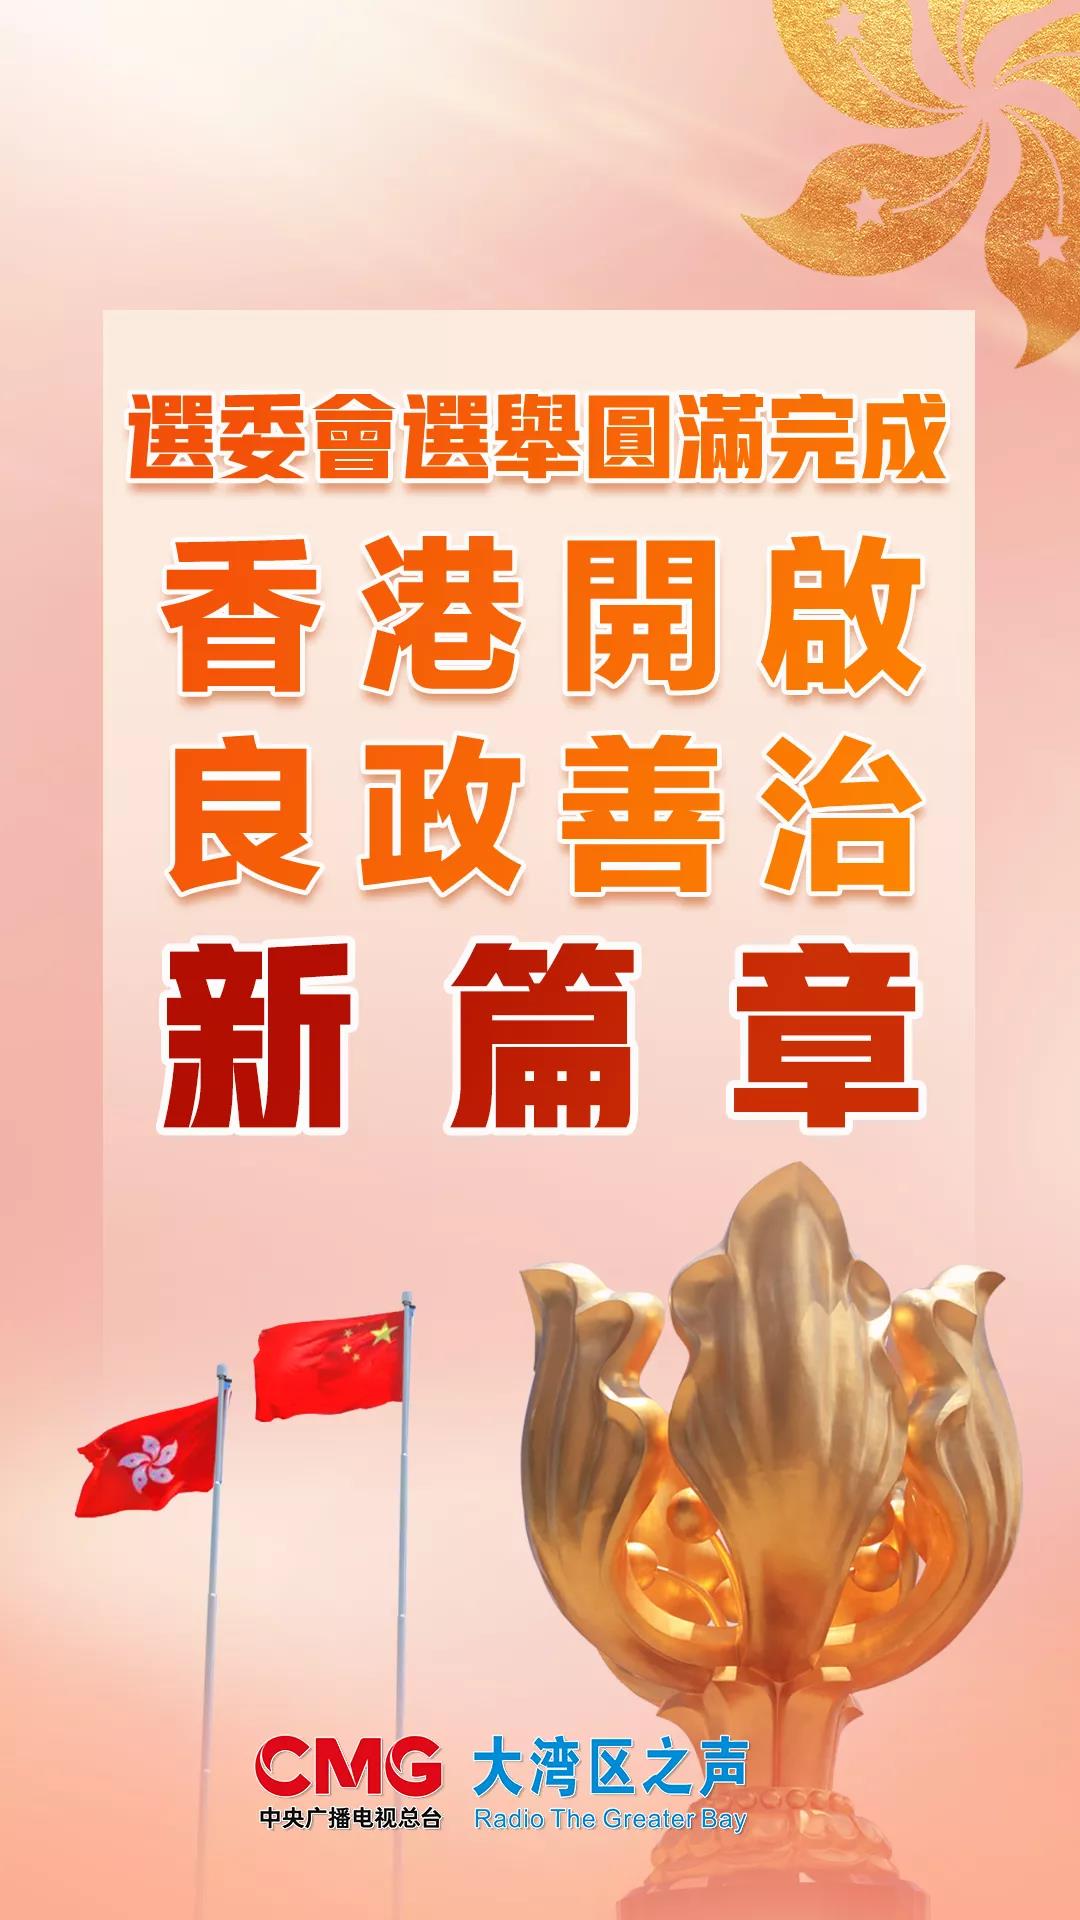 选委会选举圆满完成 香港开启良政善治新篇章